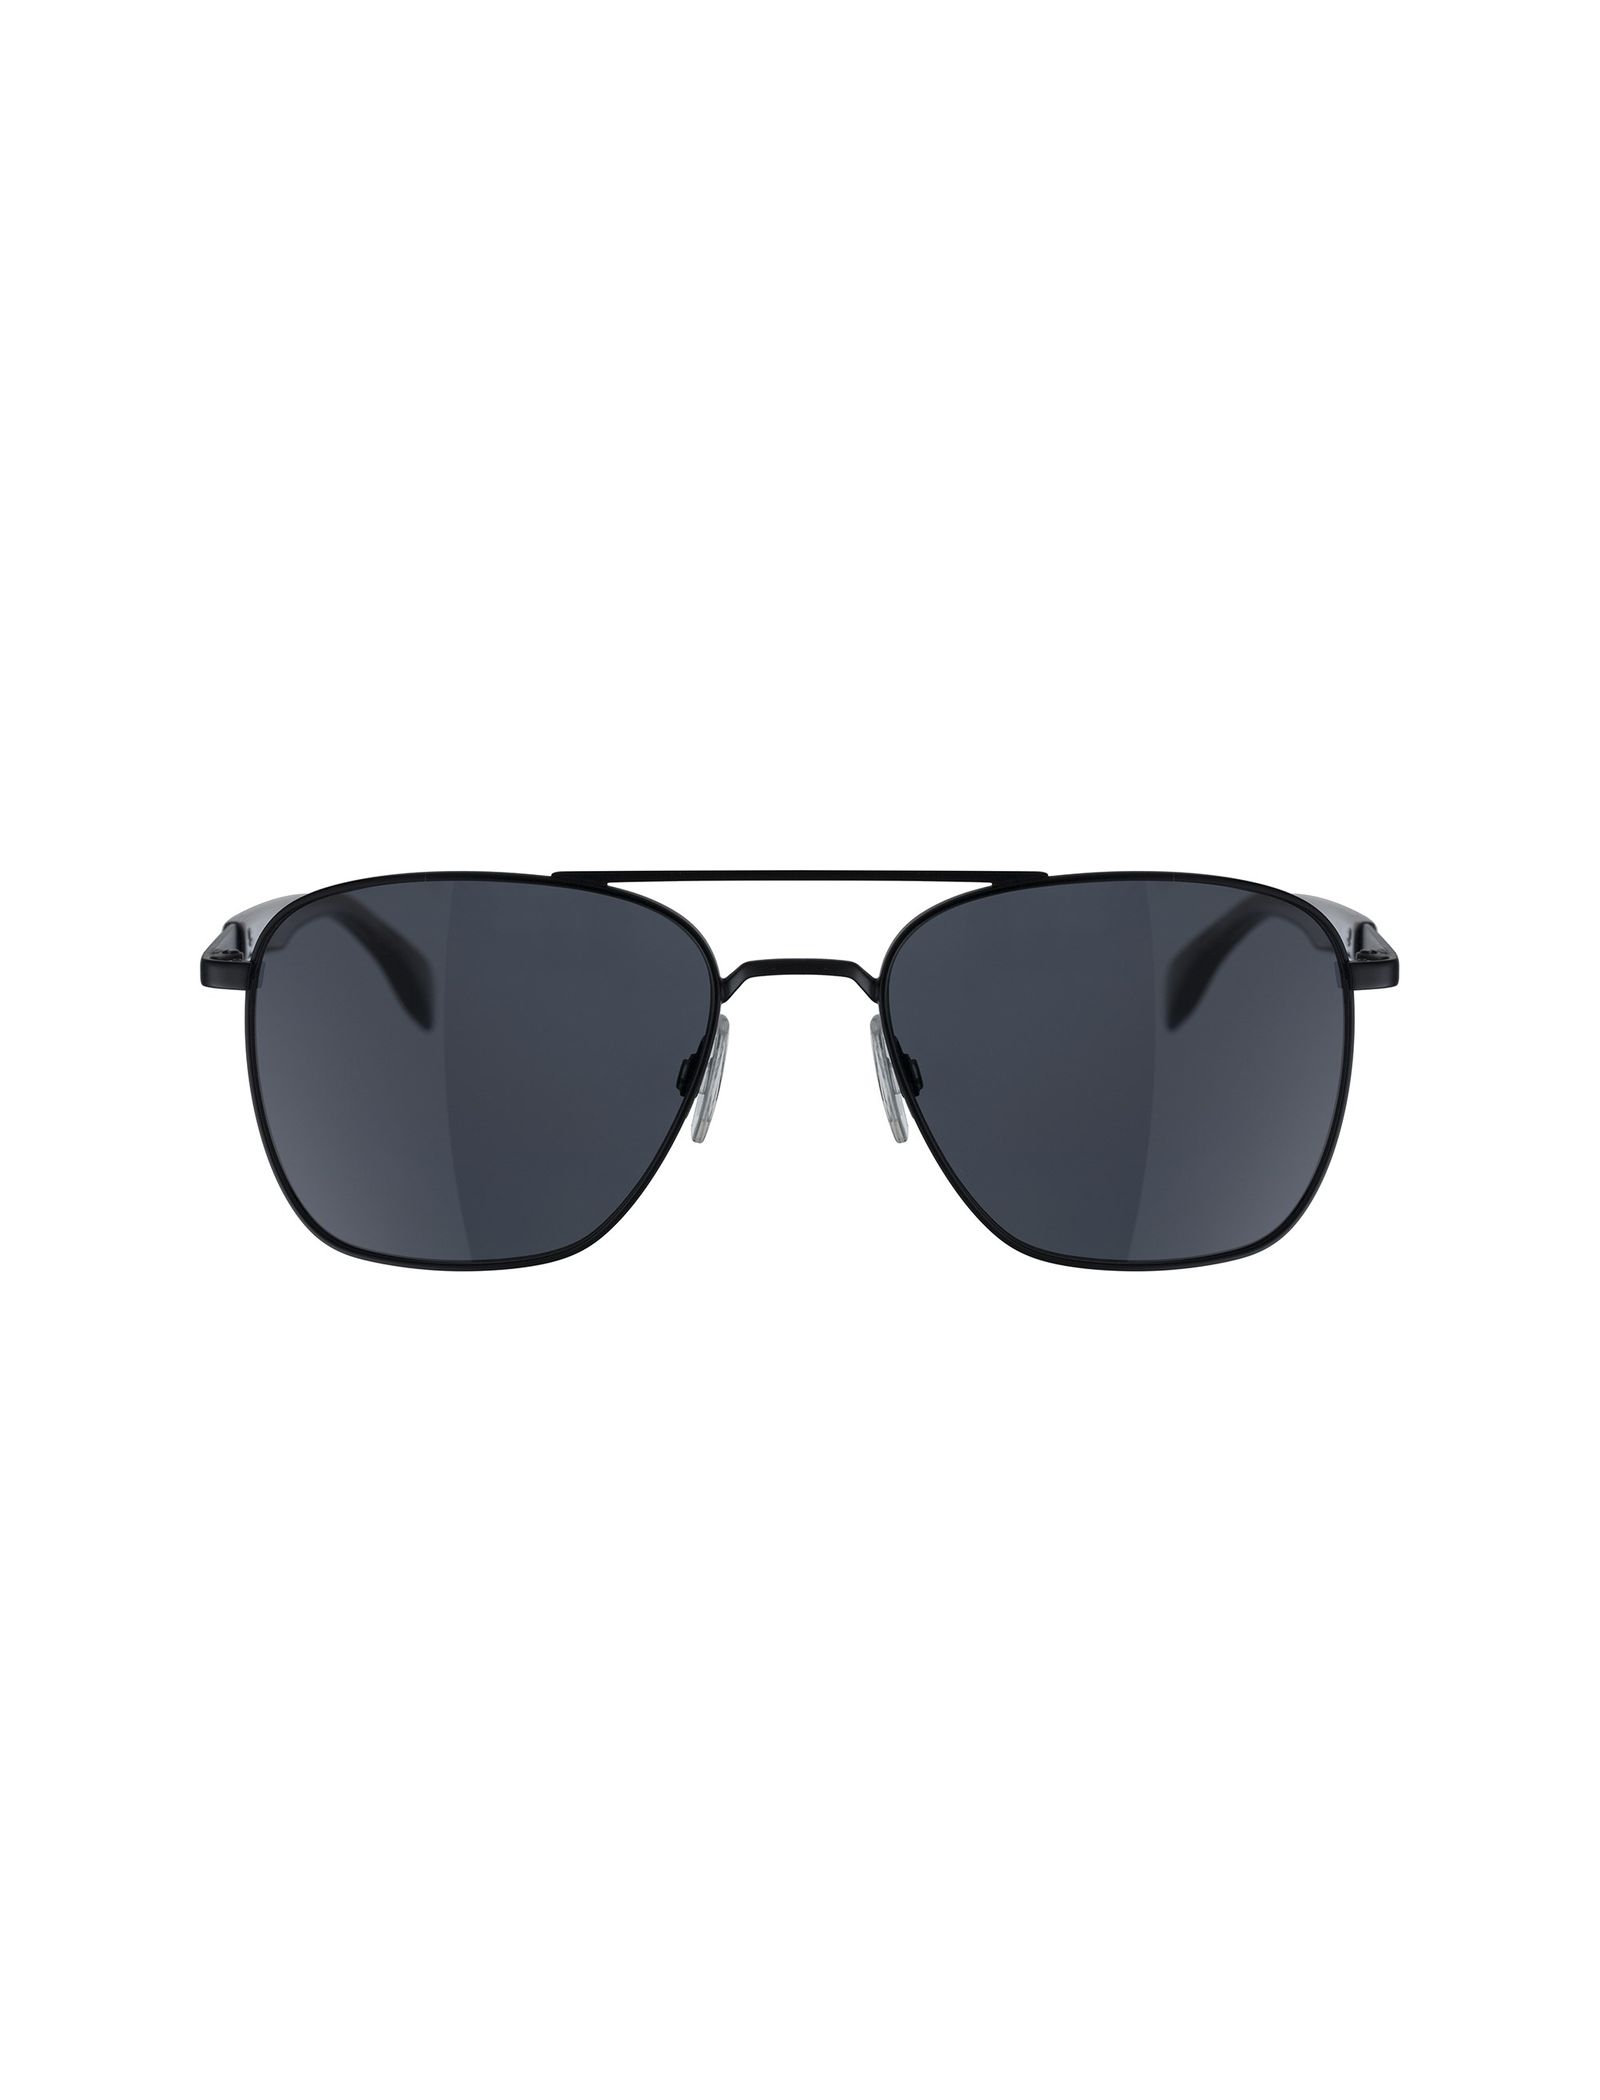 عینک آفتابی خلبانی مردانه - باس اورنج - مشکي  - 2